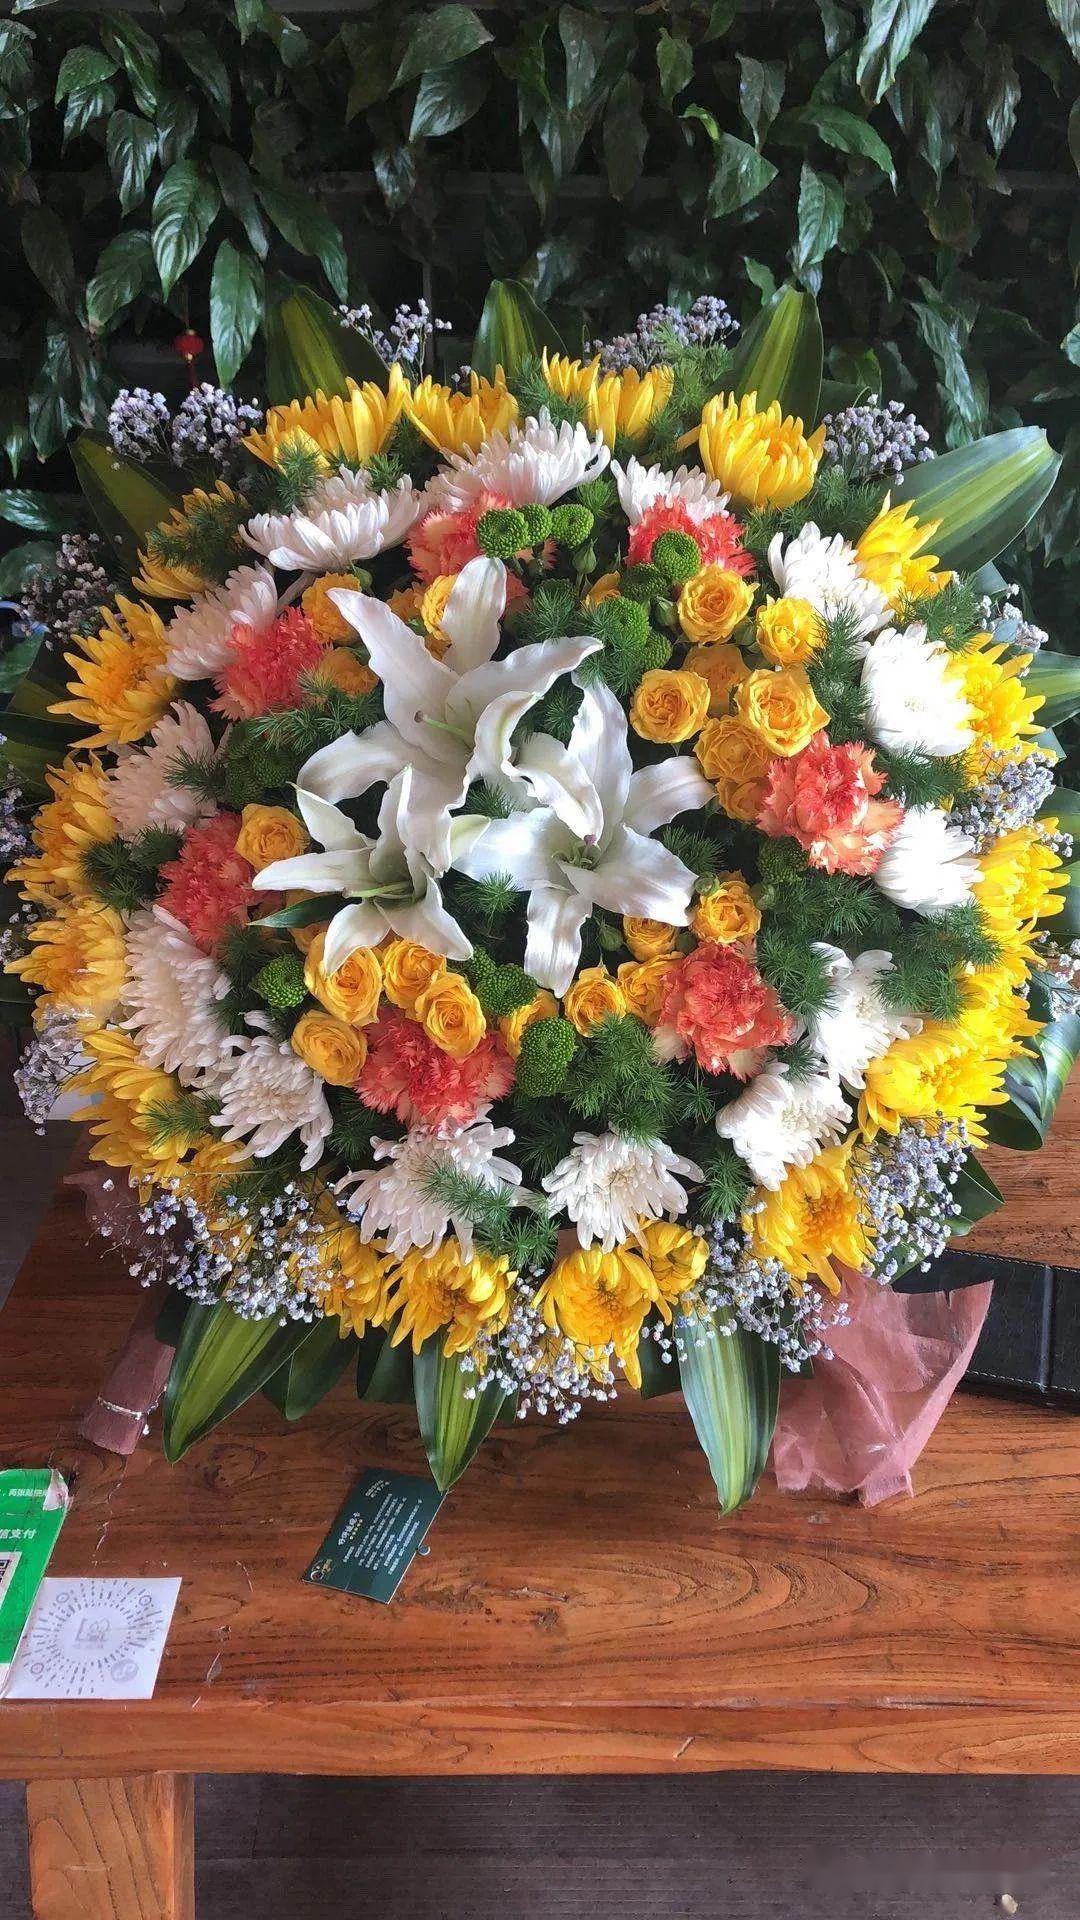 清明时节让我们为故人献上一束鲜花,送去一份思念,愿故人在天堂安好